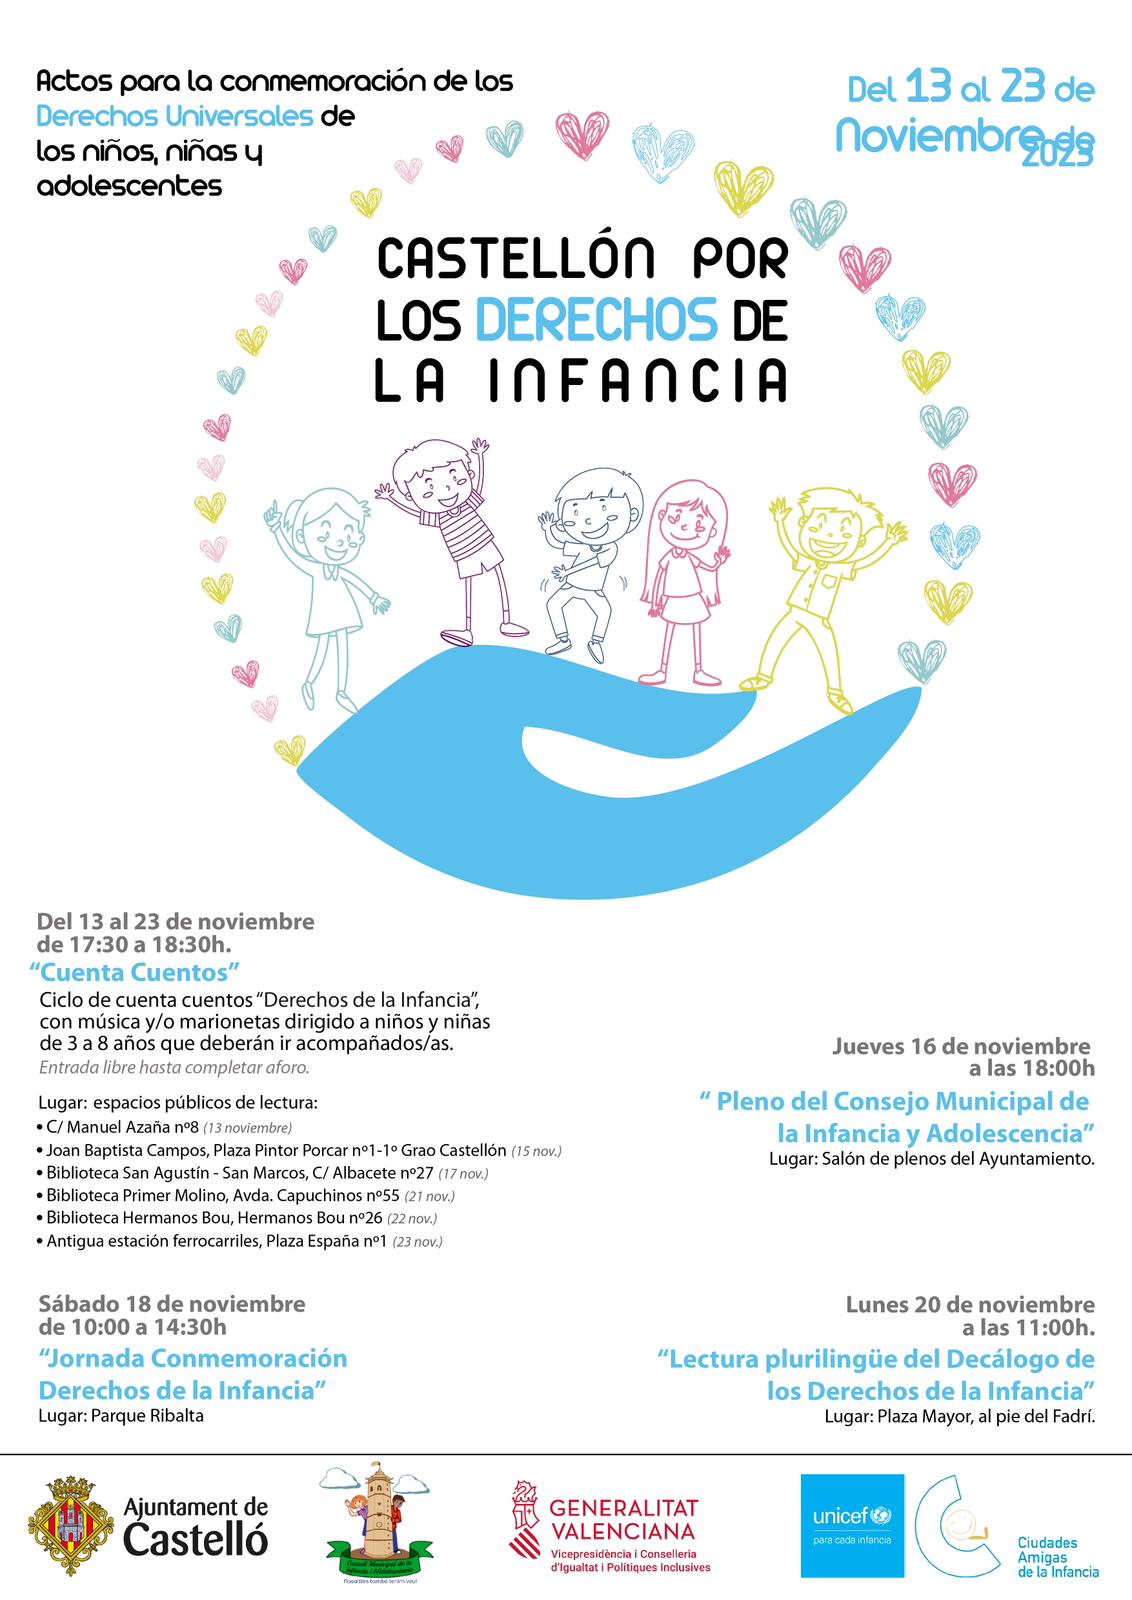 Castellón celebra los Derechos de la Infancia y la Adolescencia con actos durante toda la semana